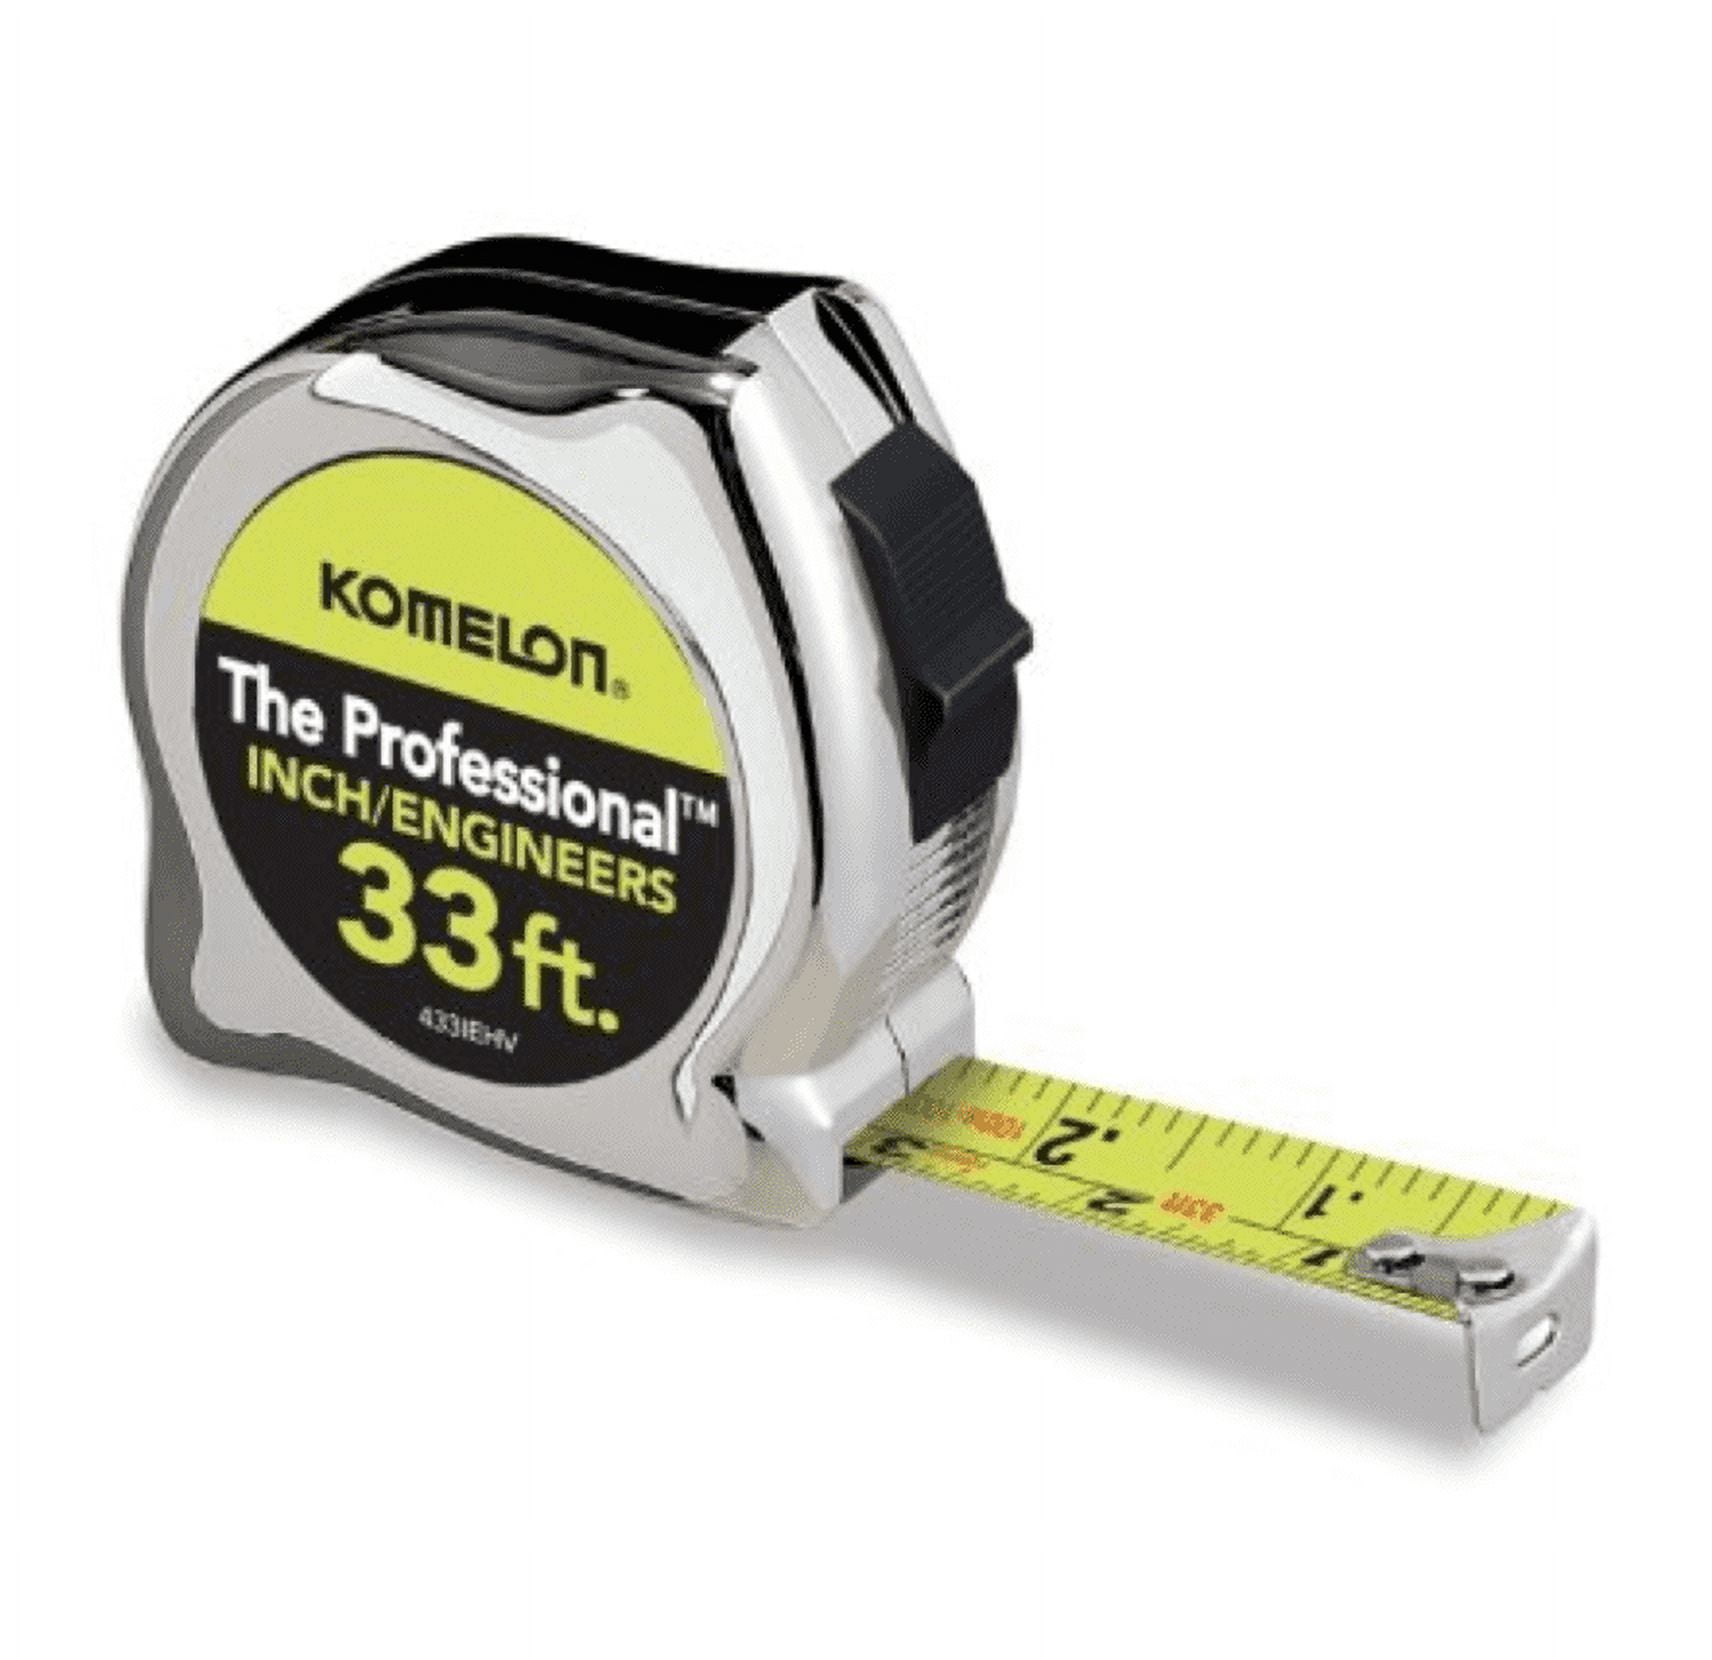 Komelon Chameleon Tape Measure 5M x 16mm KMC-21 Metric